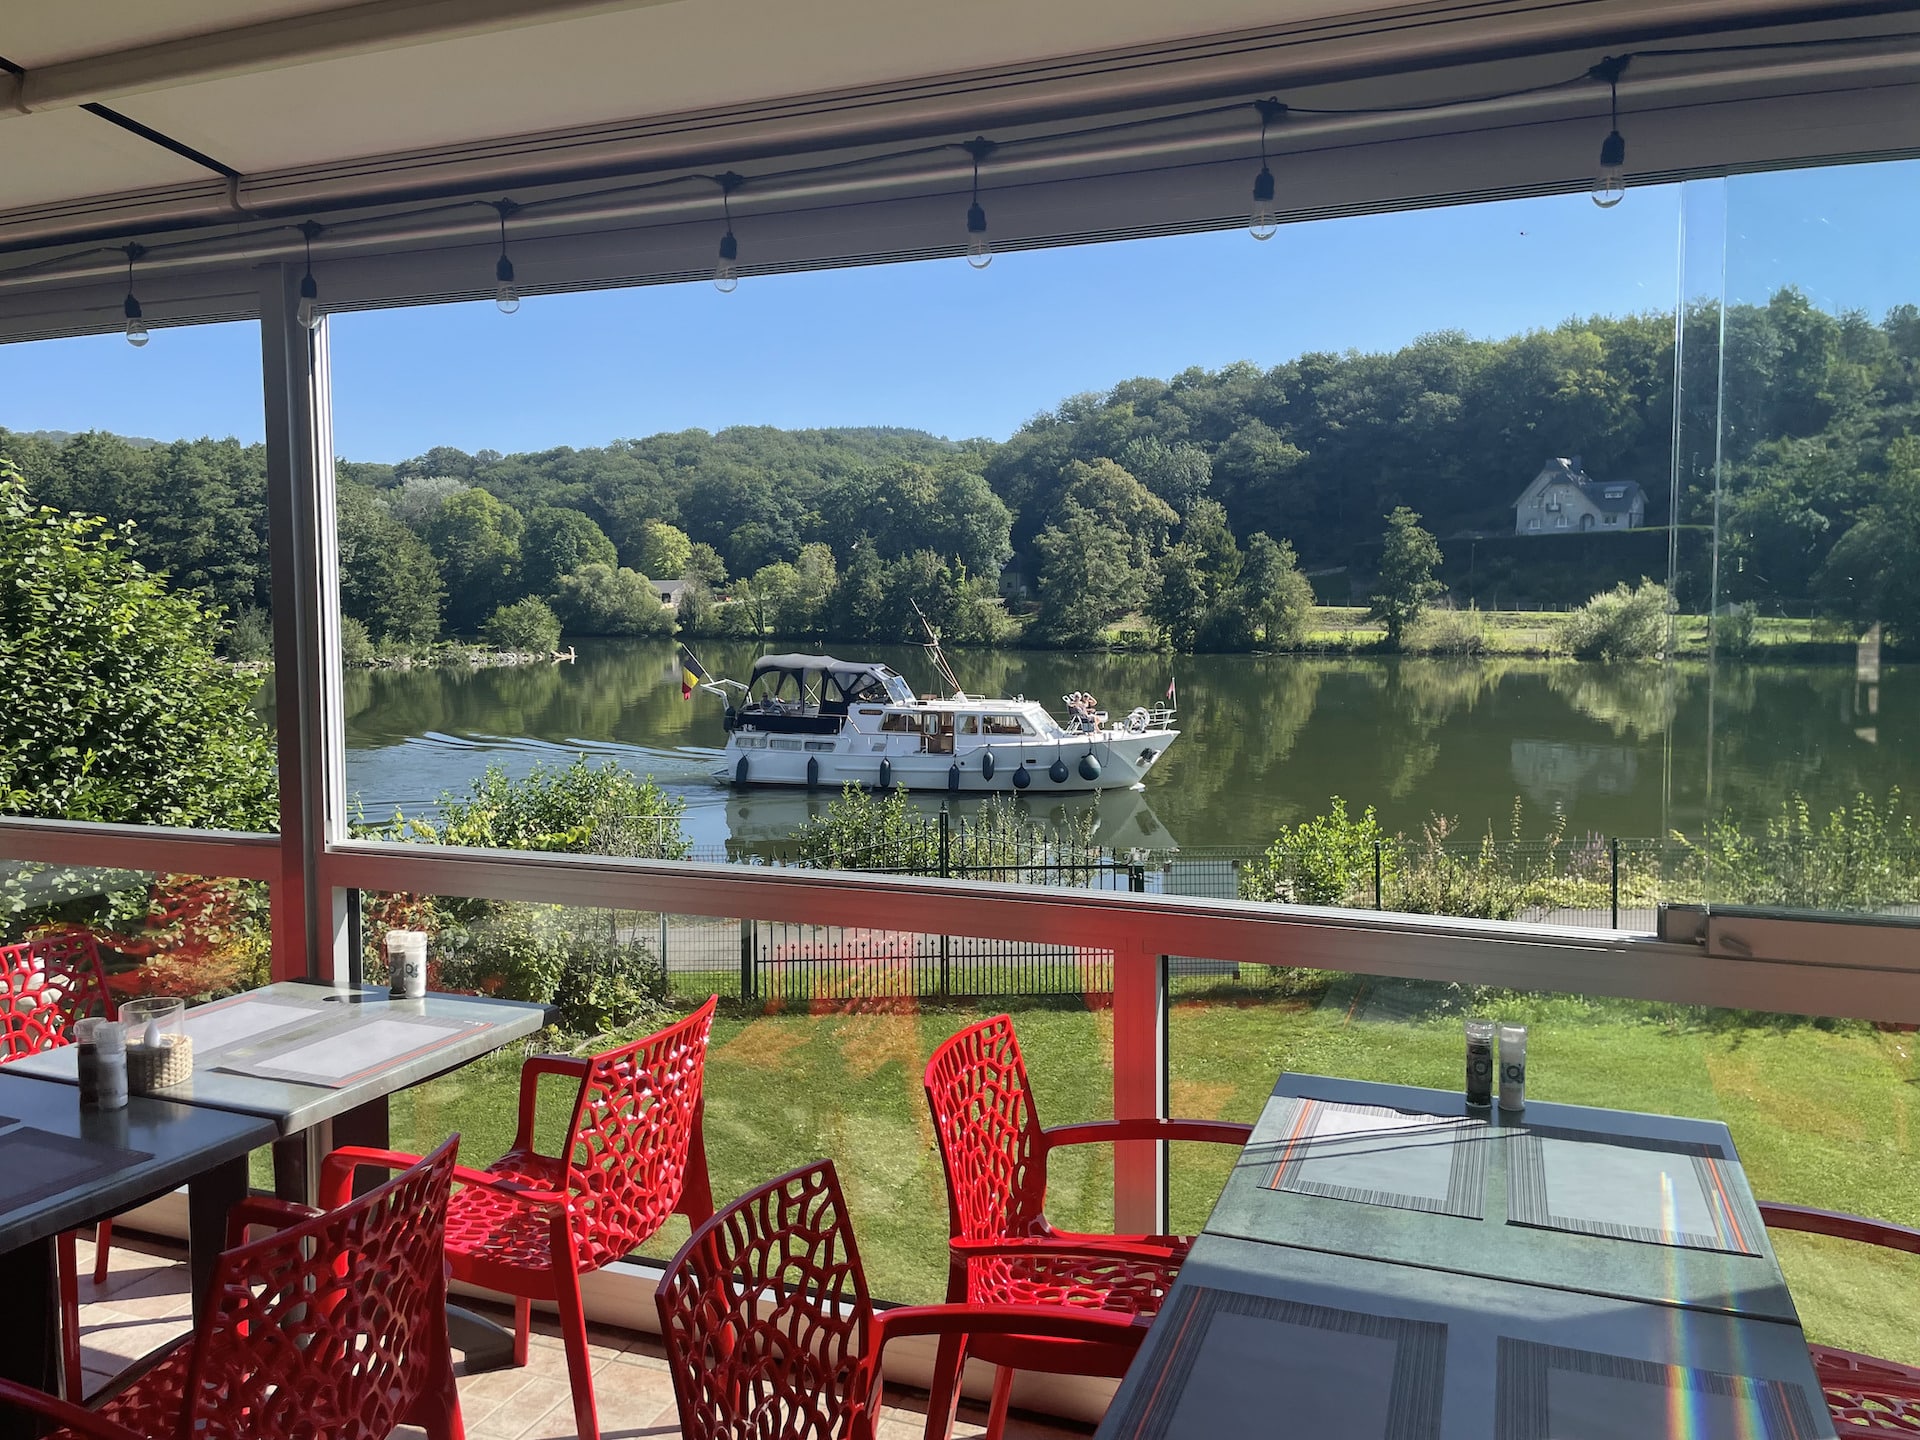 Terrasse de restaurant vue sur rivière et bateau.